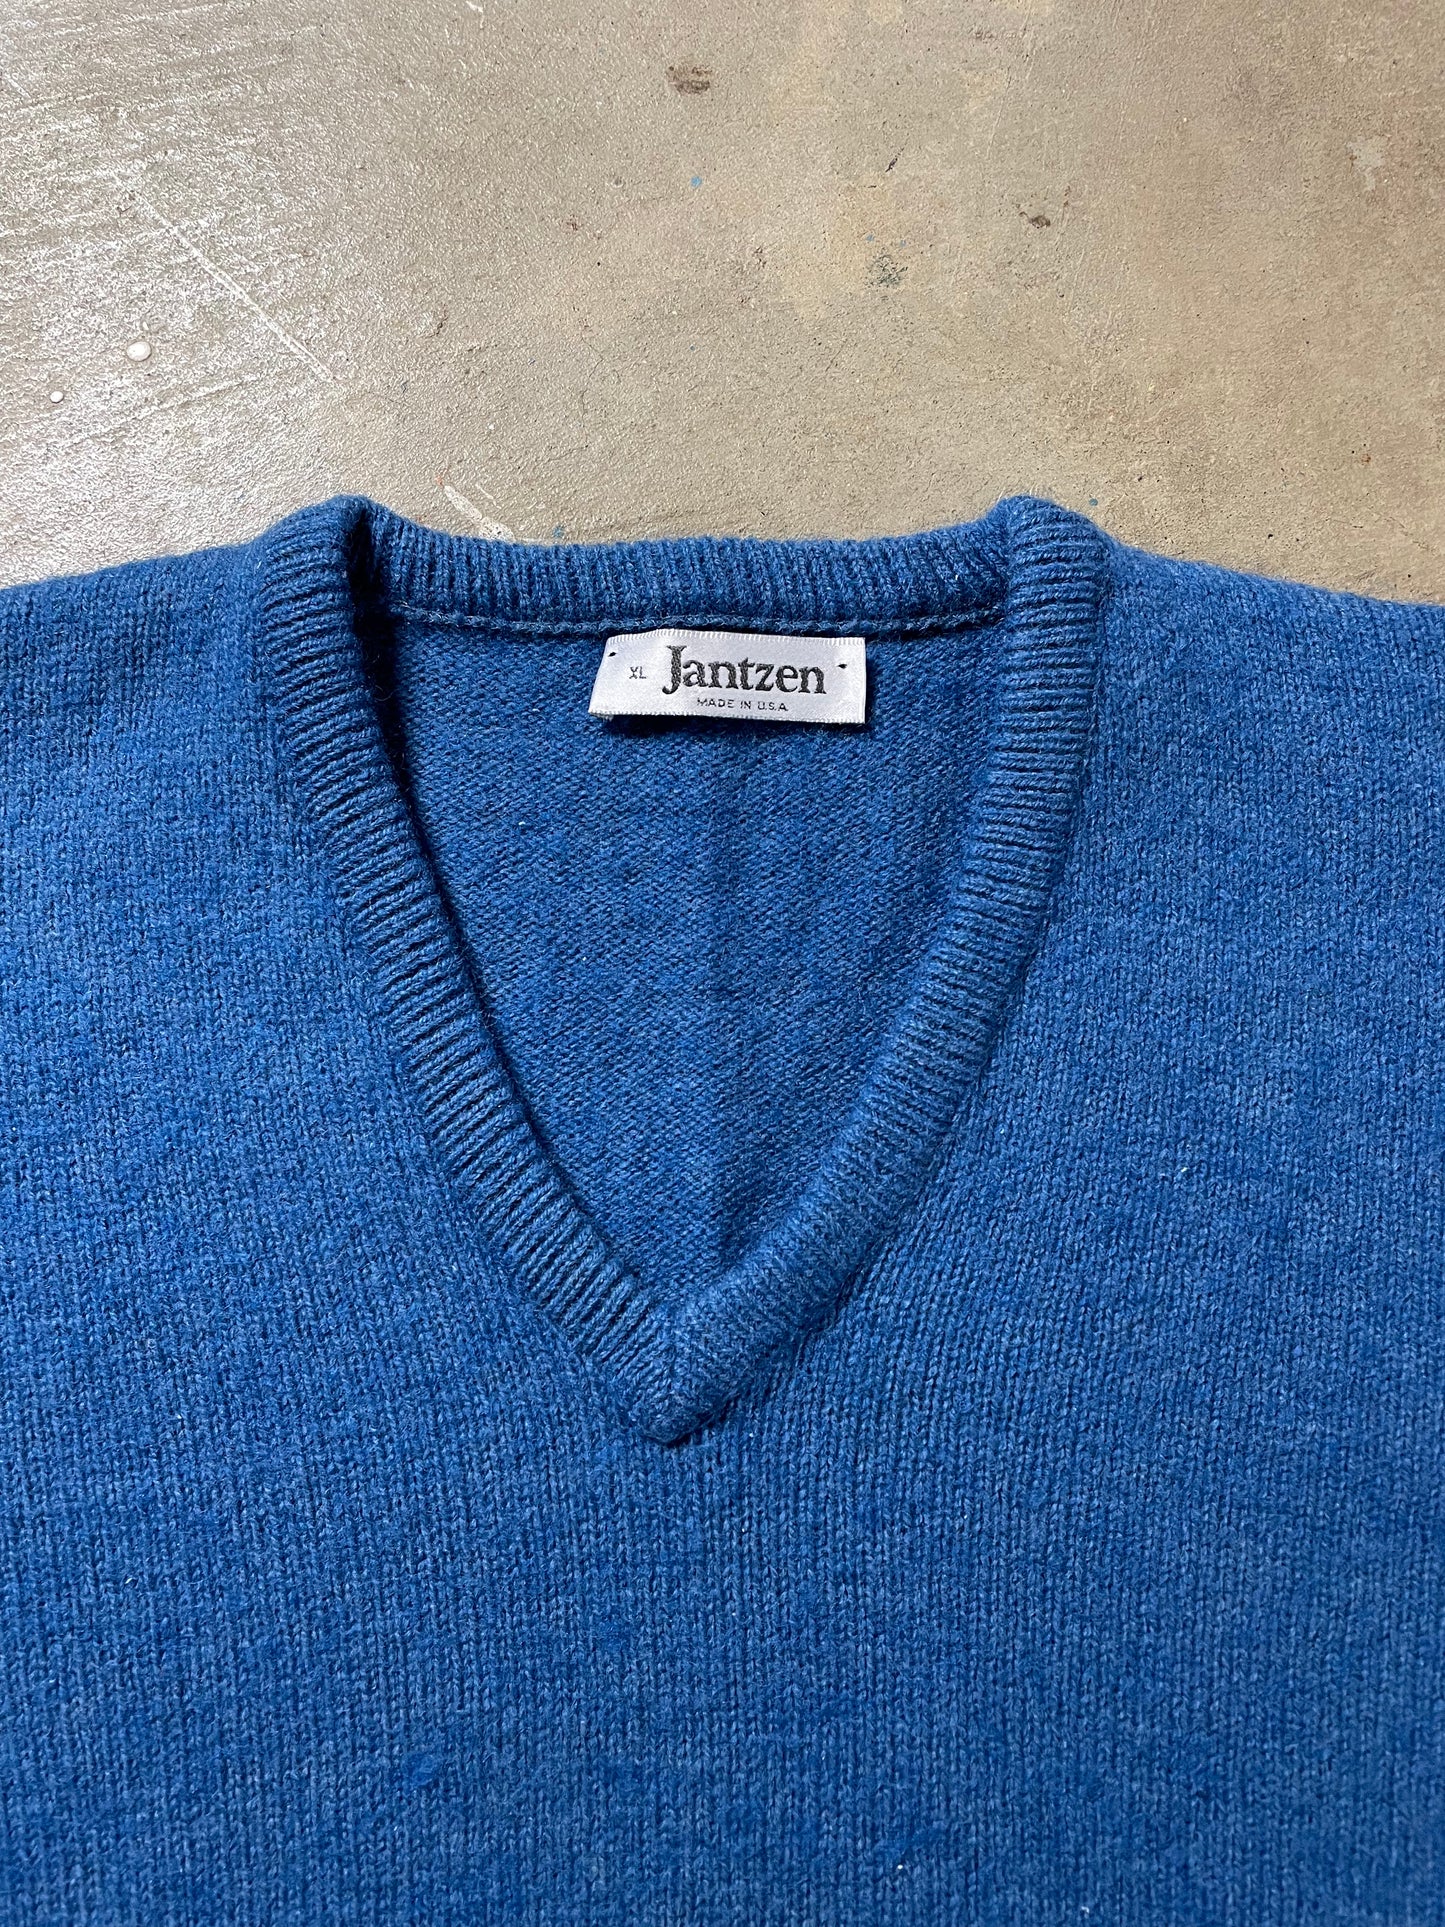 1980s Jantzen V-Neck Sweater